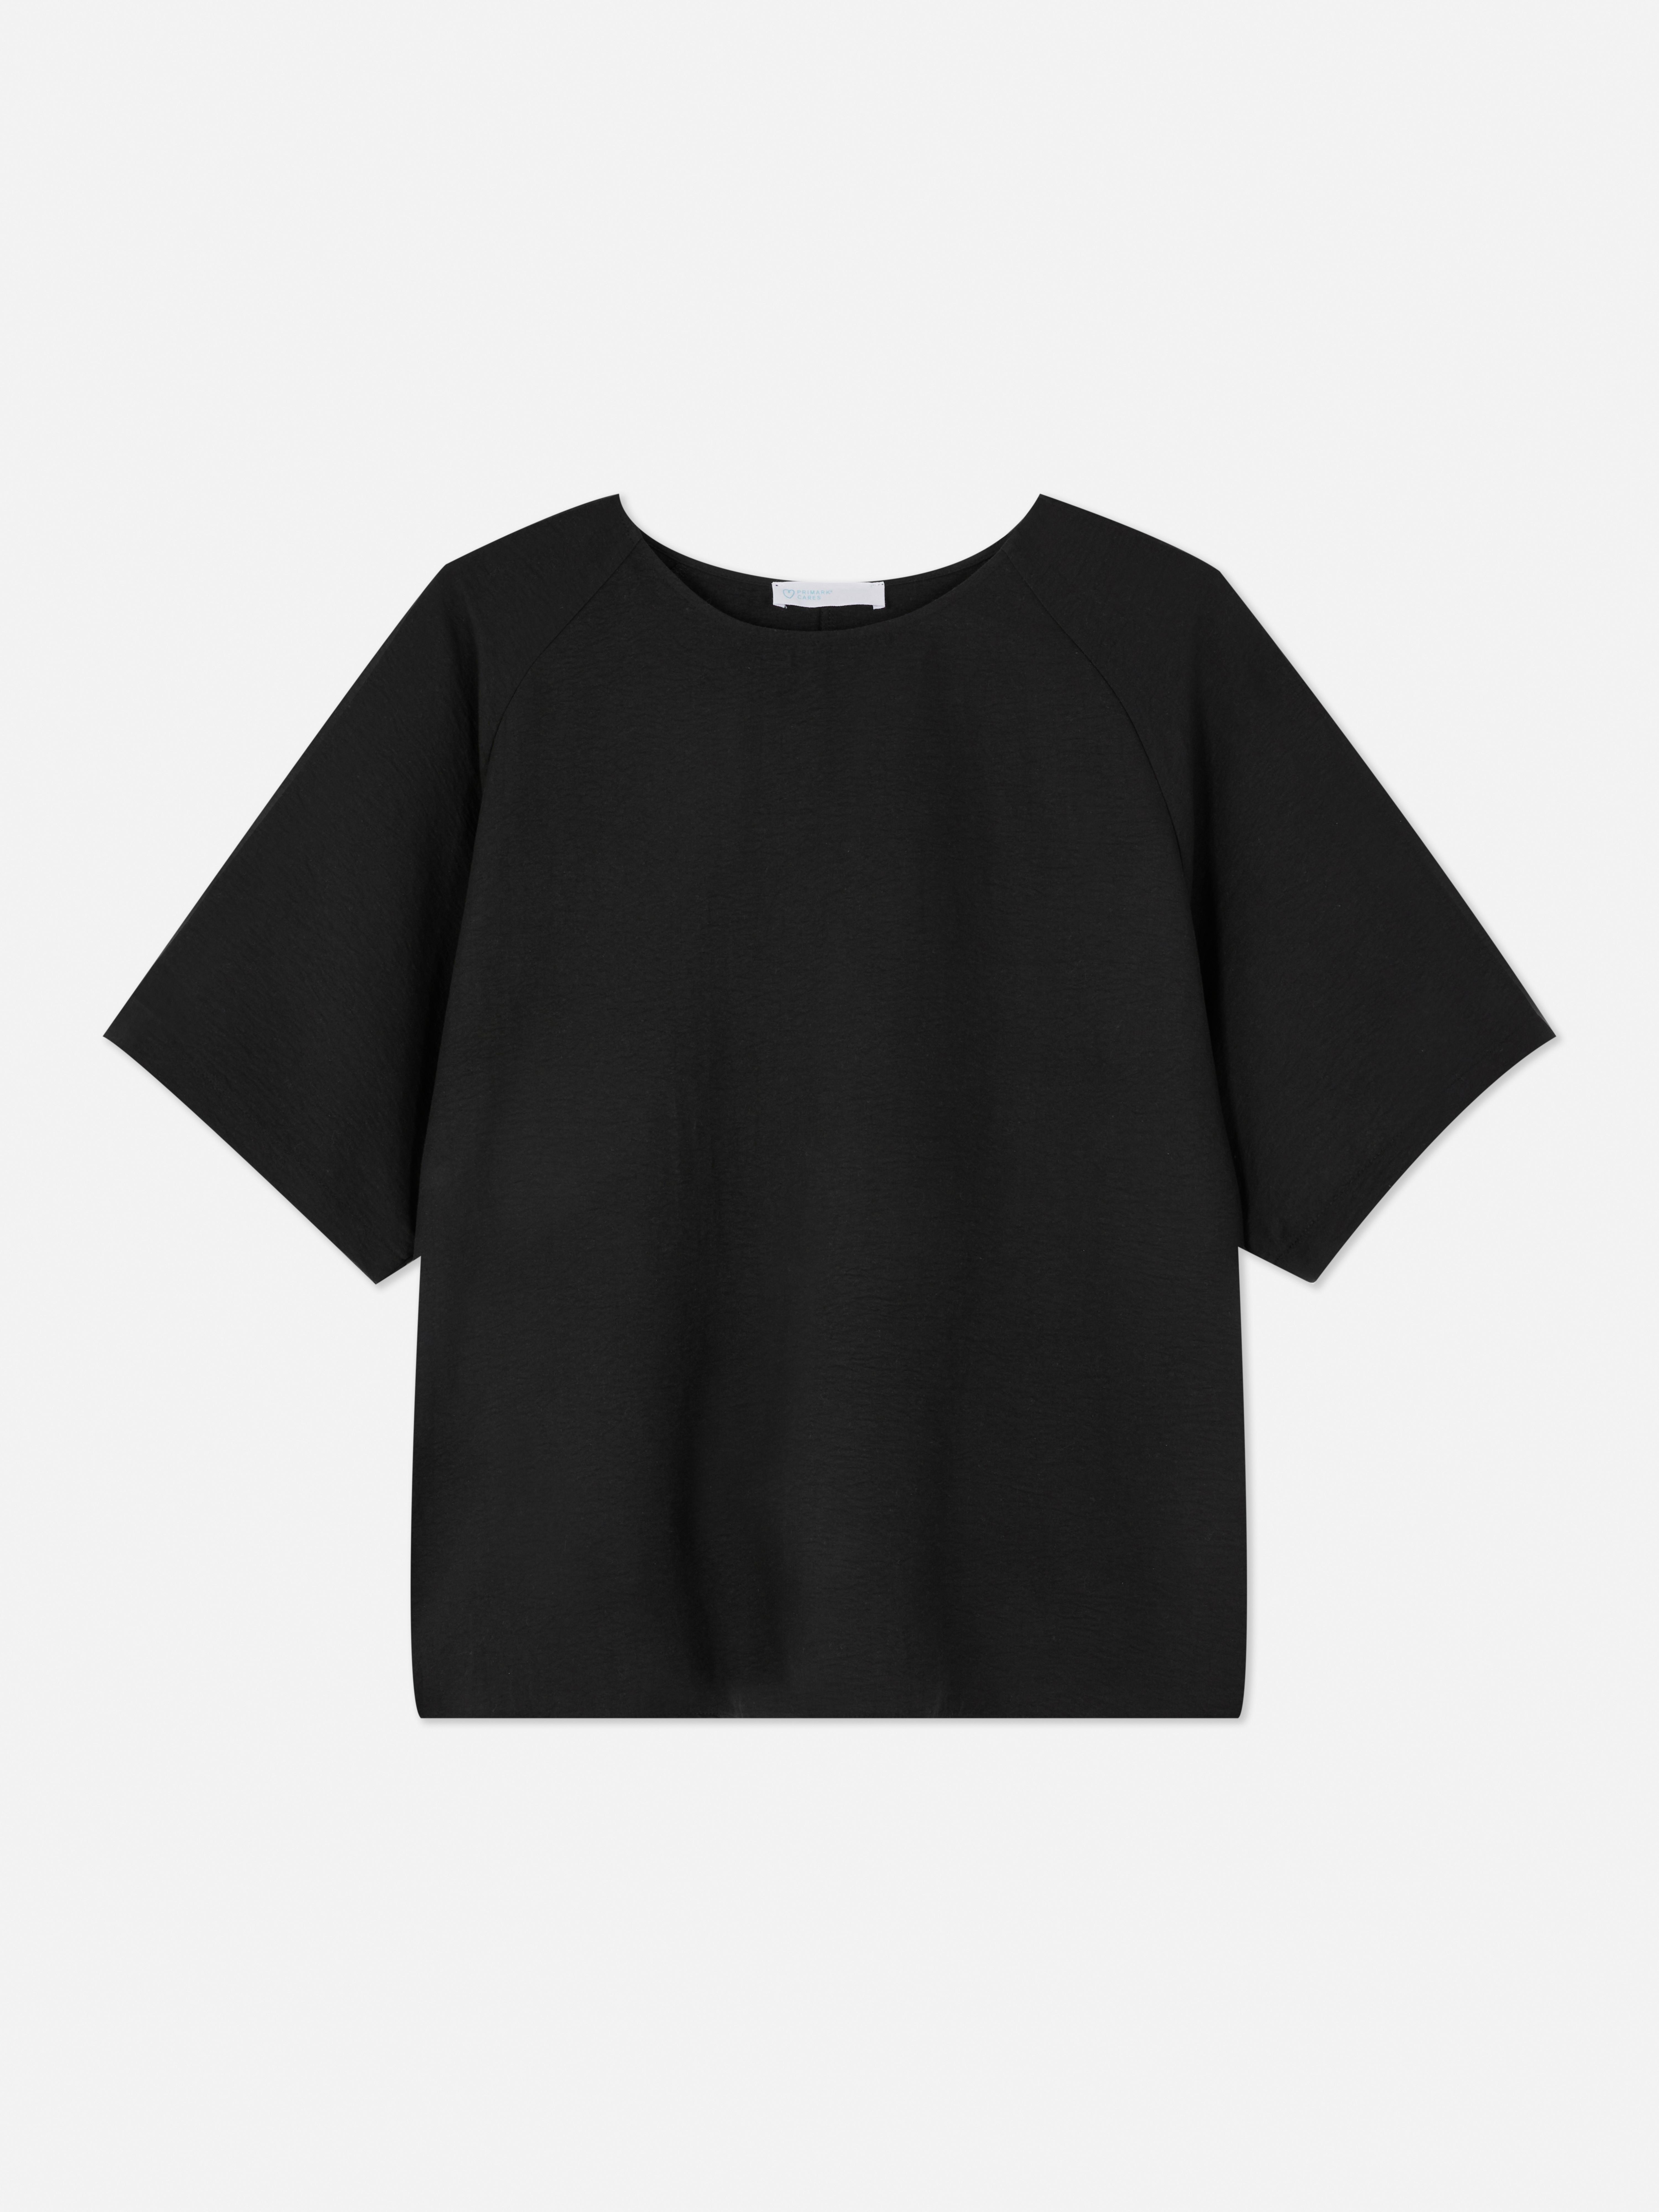 Camiseta lisa de manga raglán | de mujer | Ropa para mujer | Nuestra línea de moda femenina | Todos productos Primark | Primark España